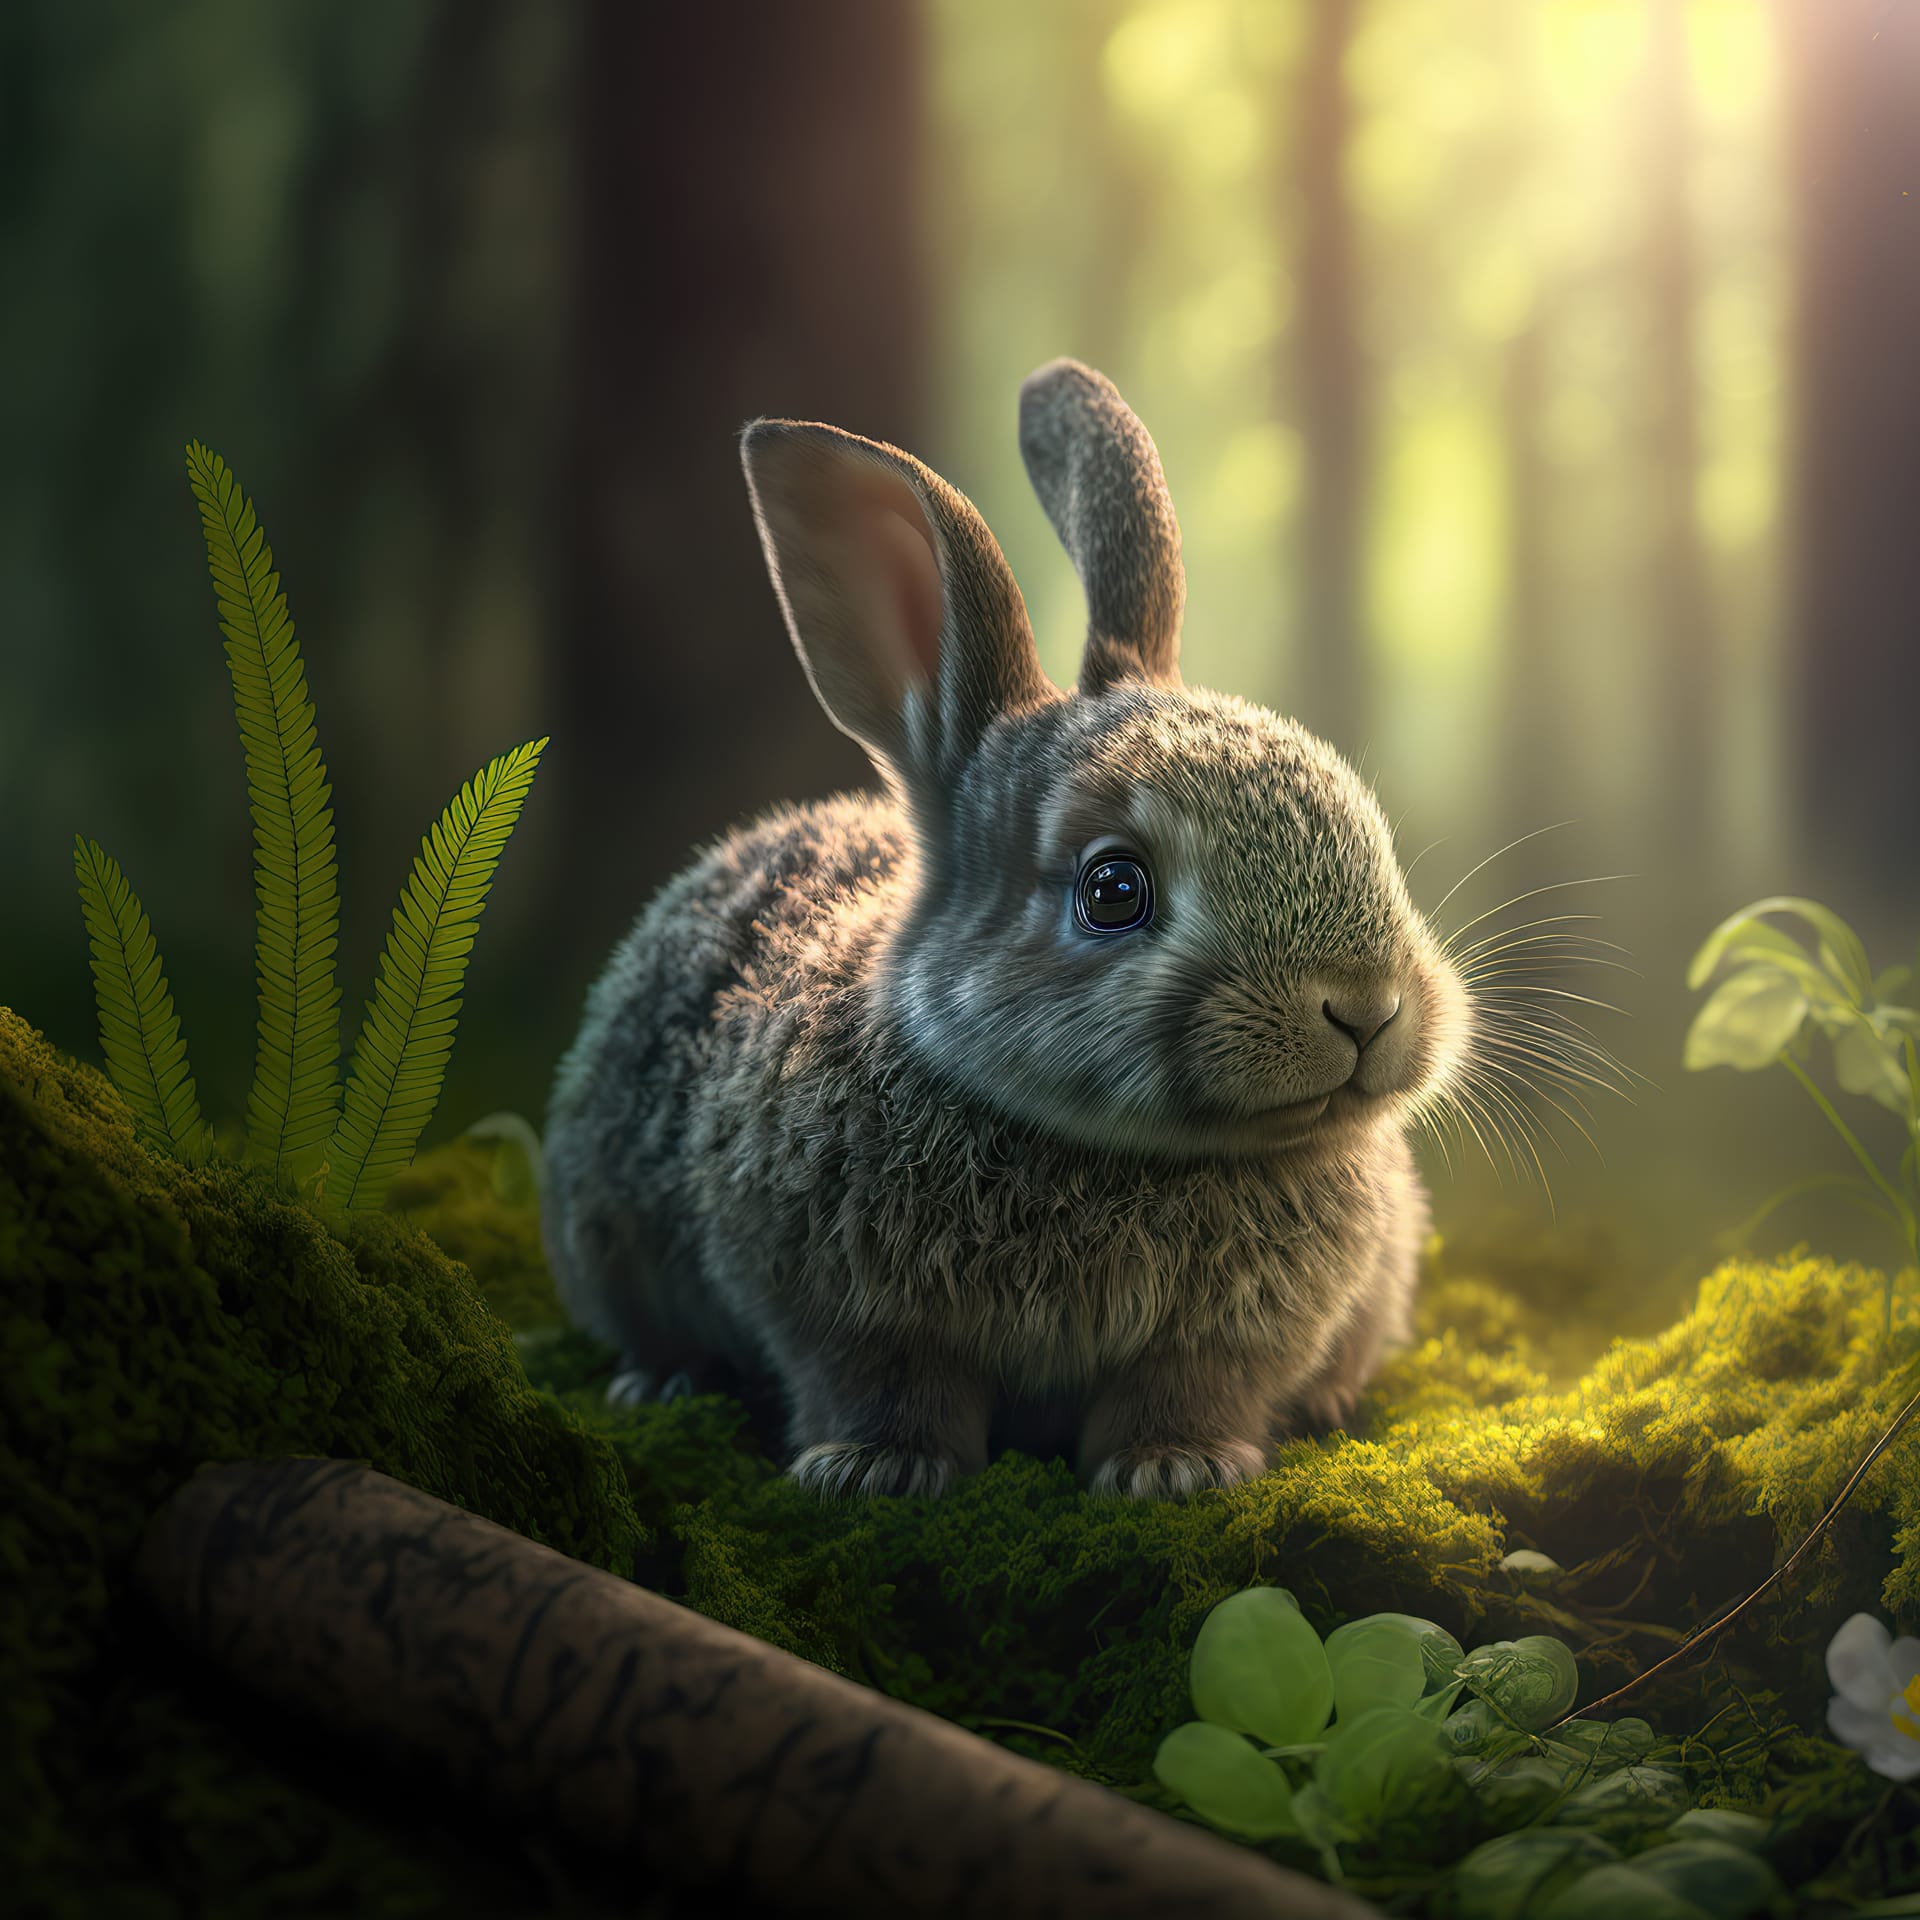 Grass magical fairytale forest rabbit green vegetation closeup 3d illustration